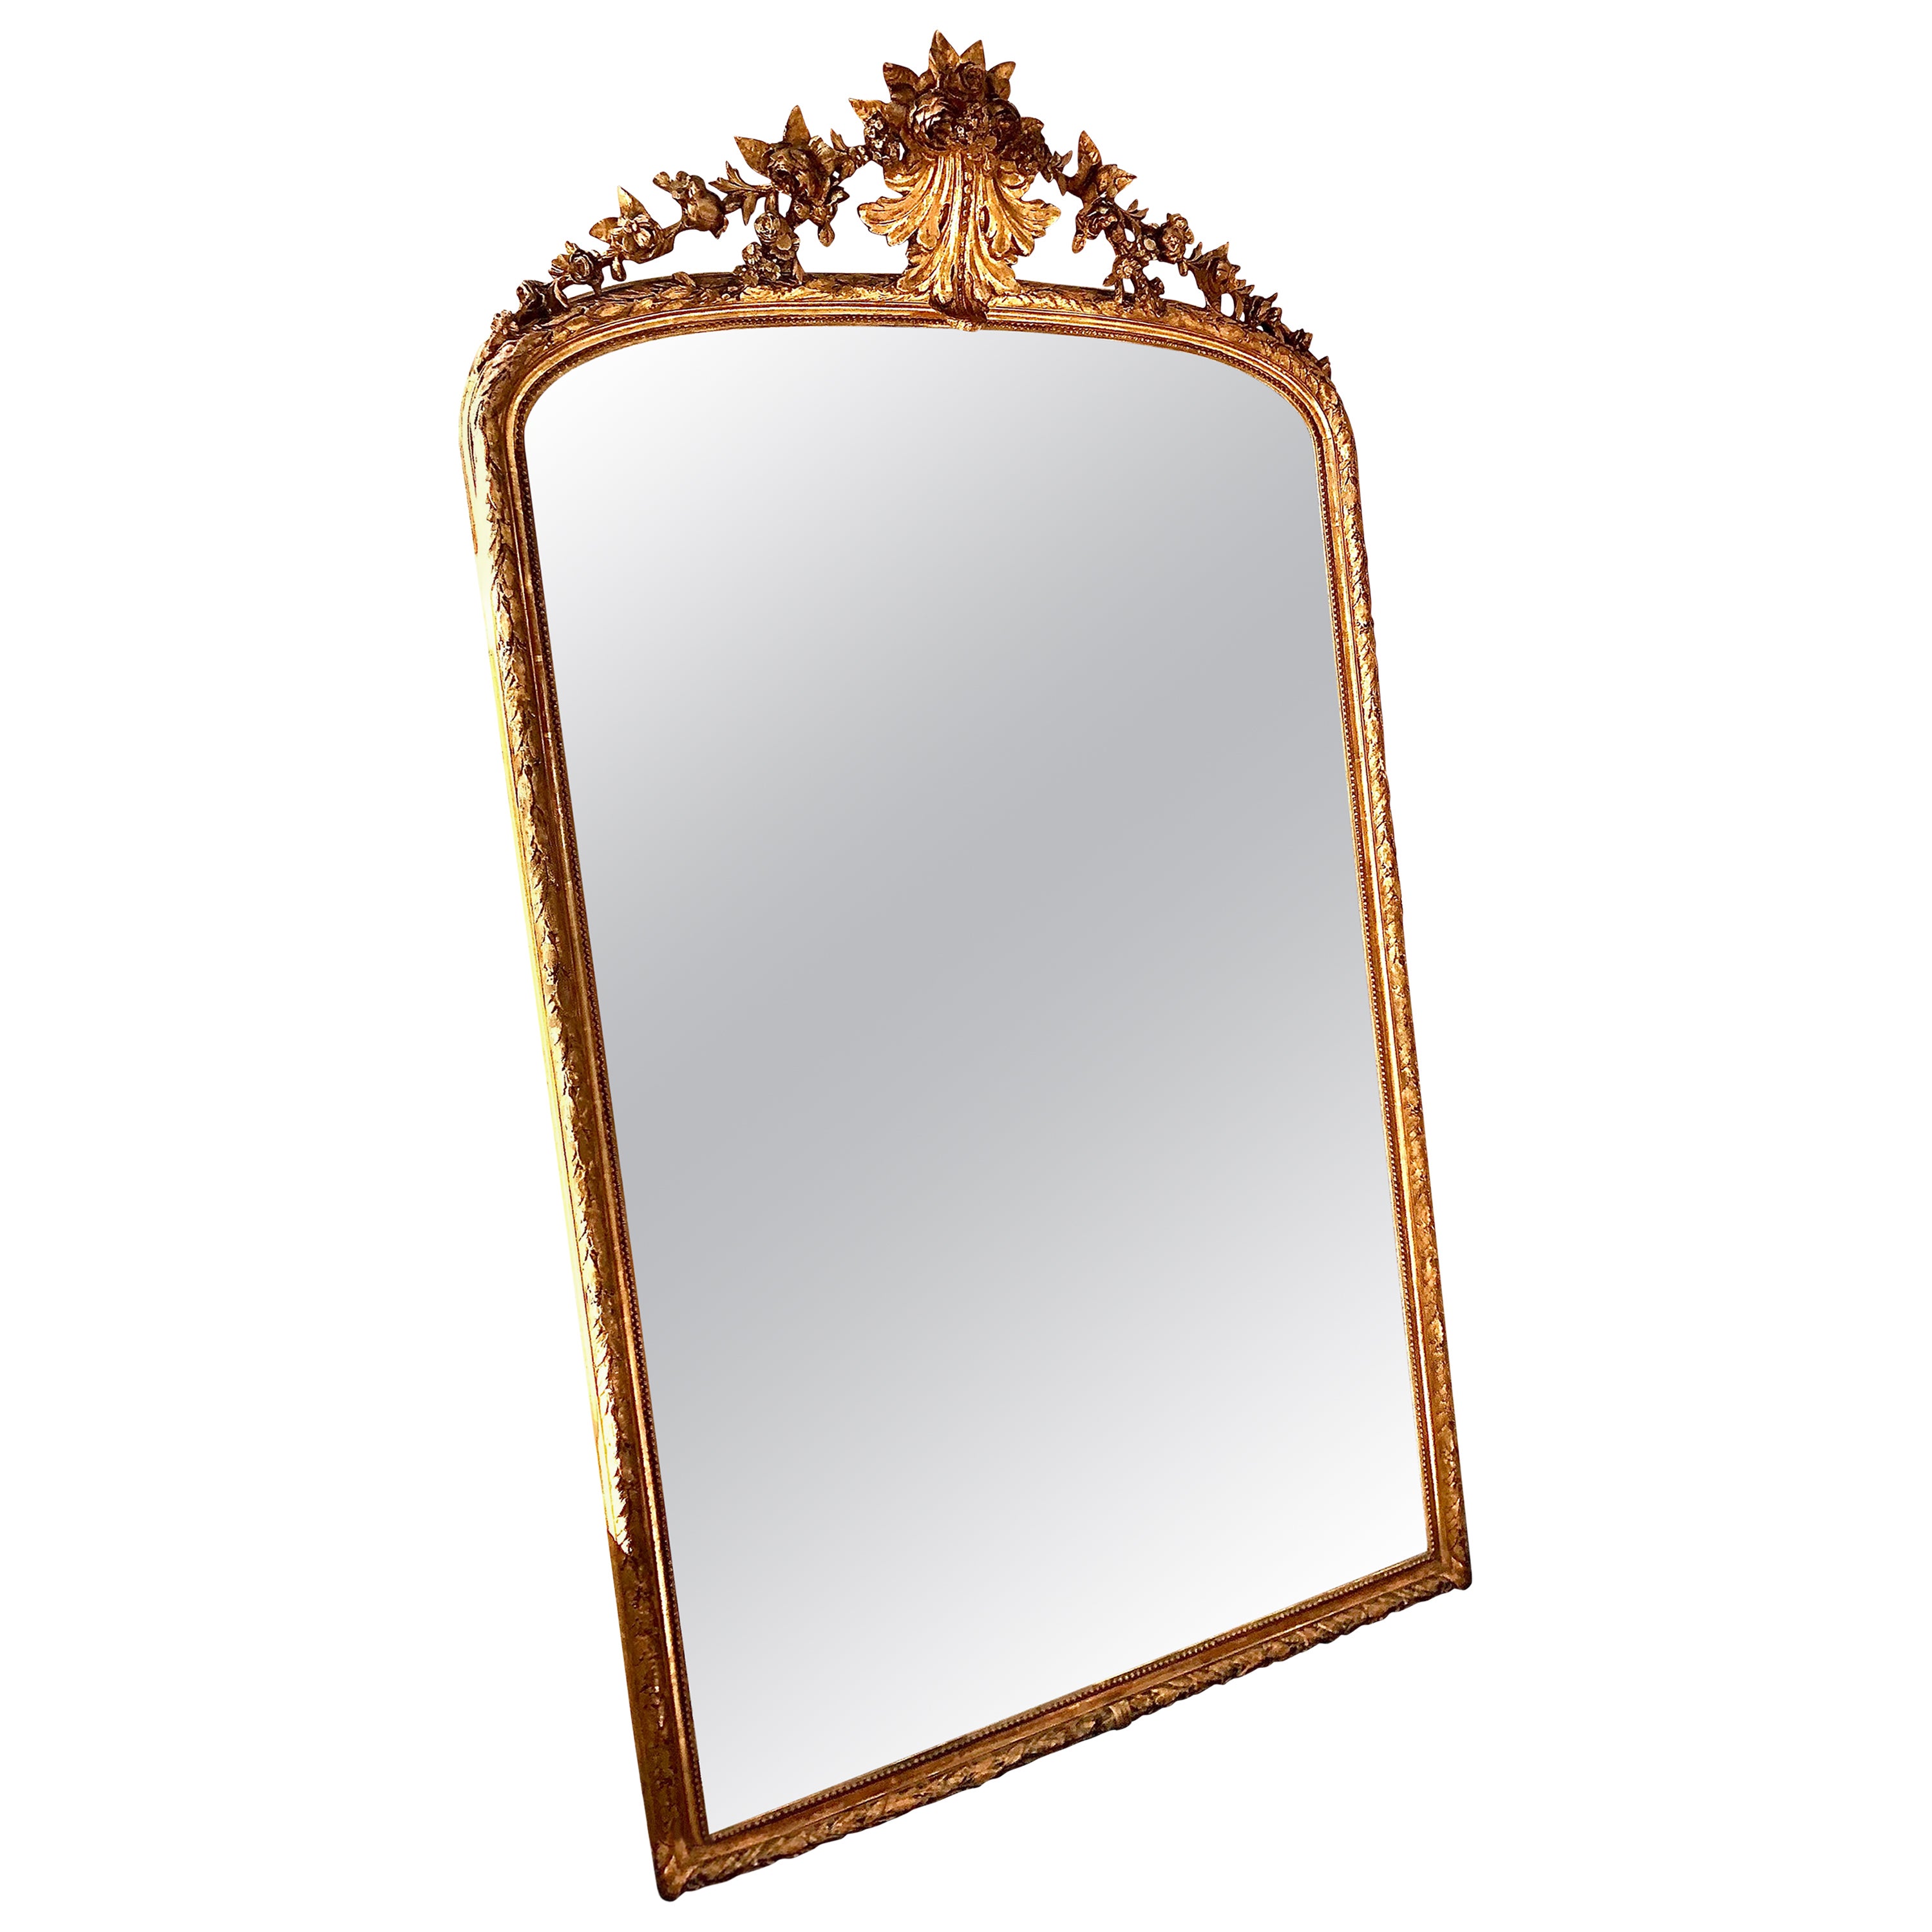 Grand miroir en bois doré du XIXe siècle de style Louis XVI